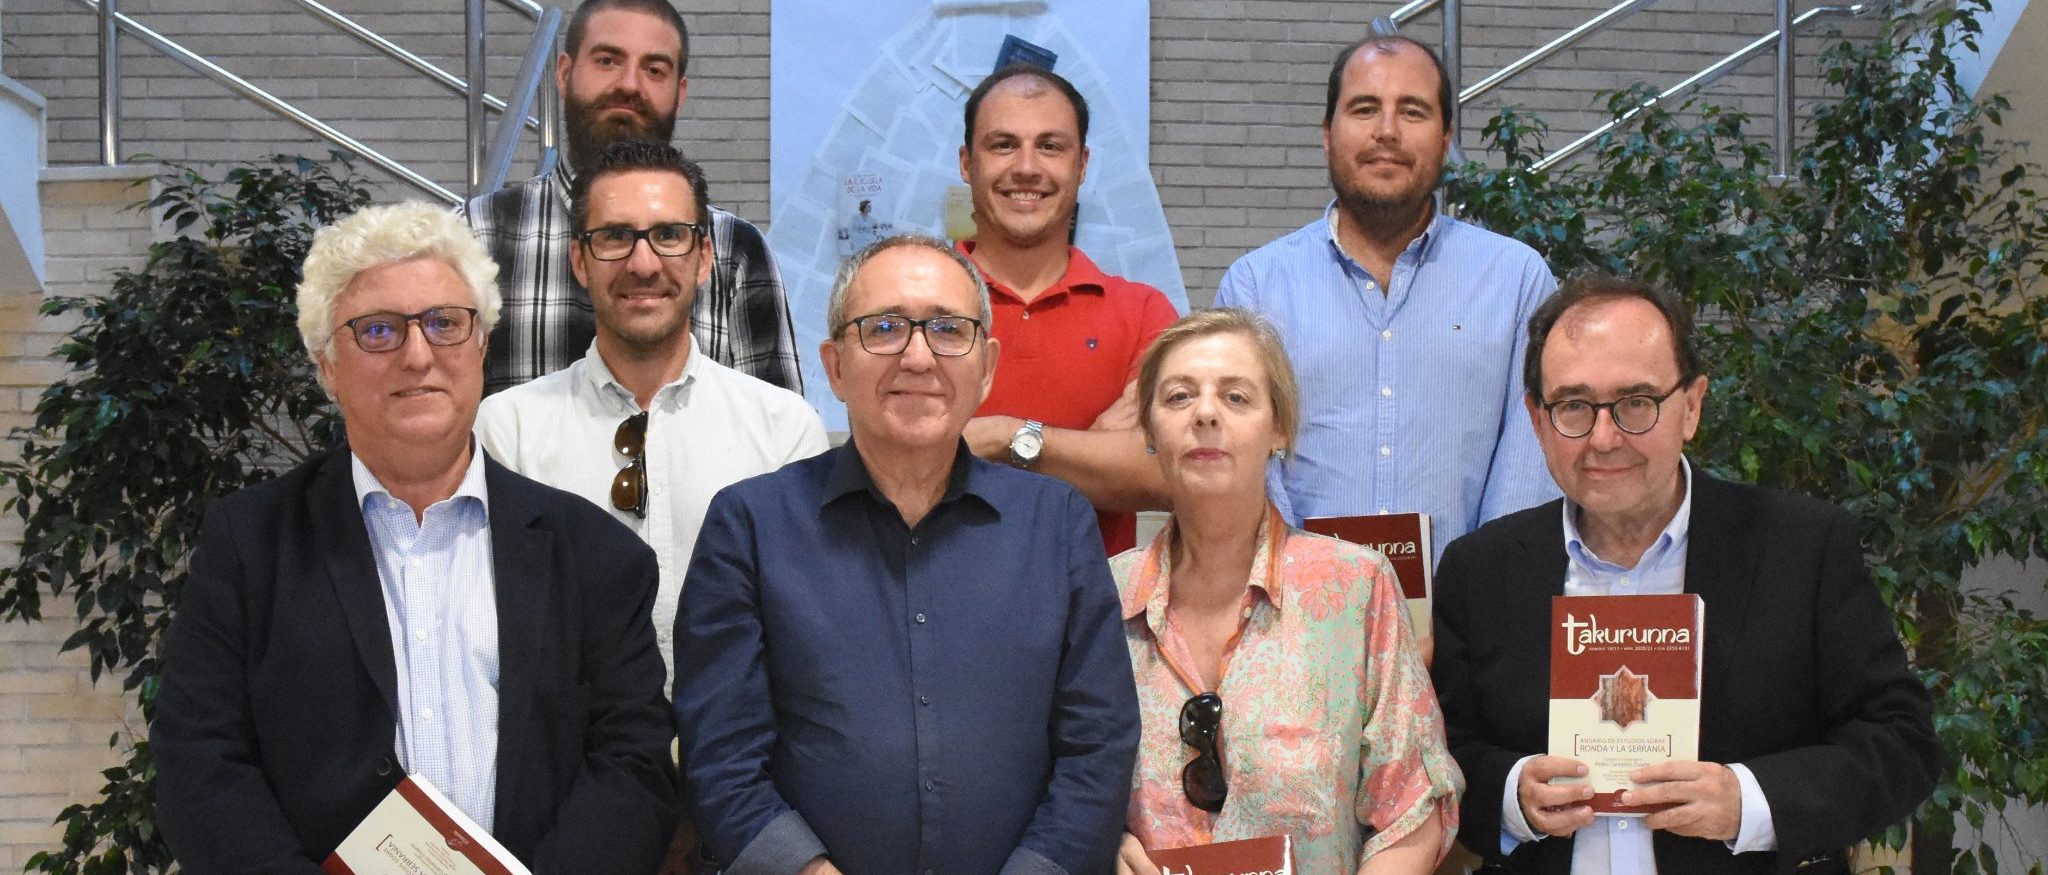 La Universidad de Cádiz participa en el homenaje al investigador Pedro Cantalejo Duarte en Ardales